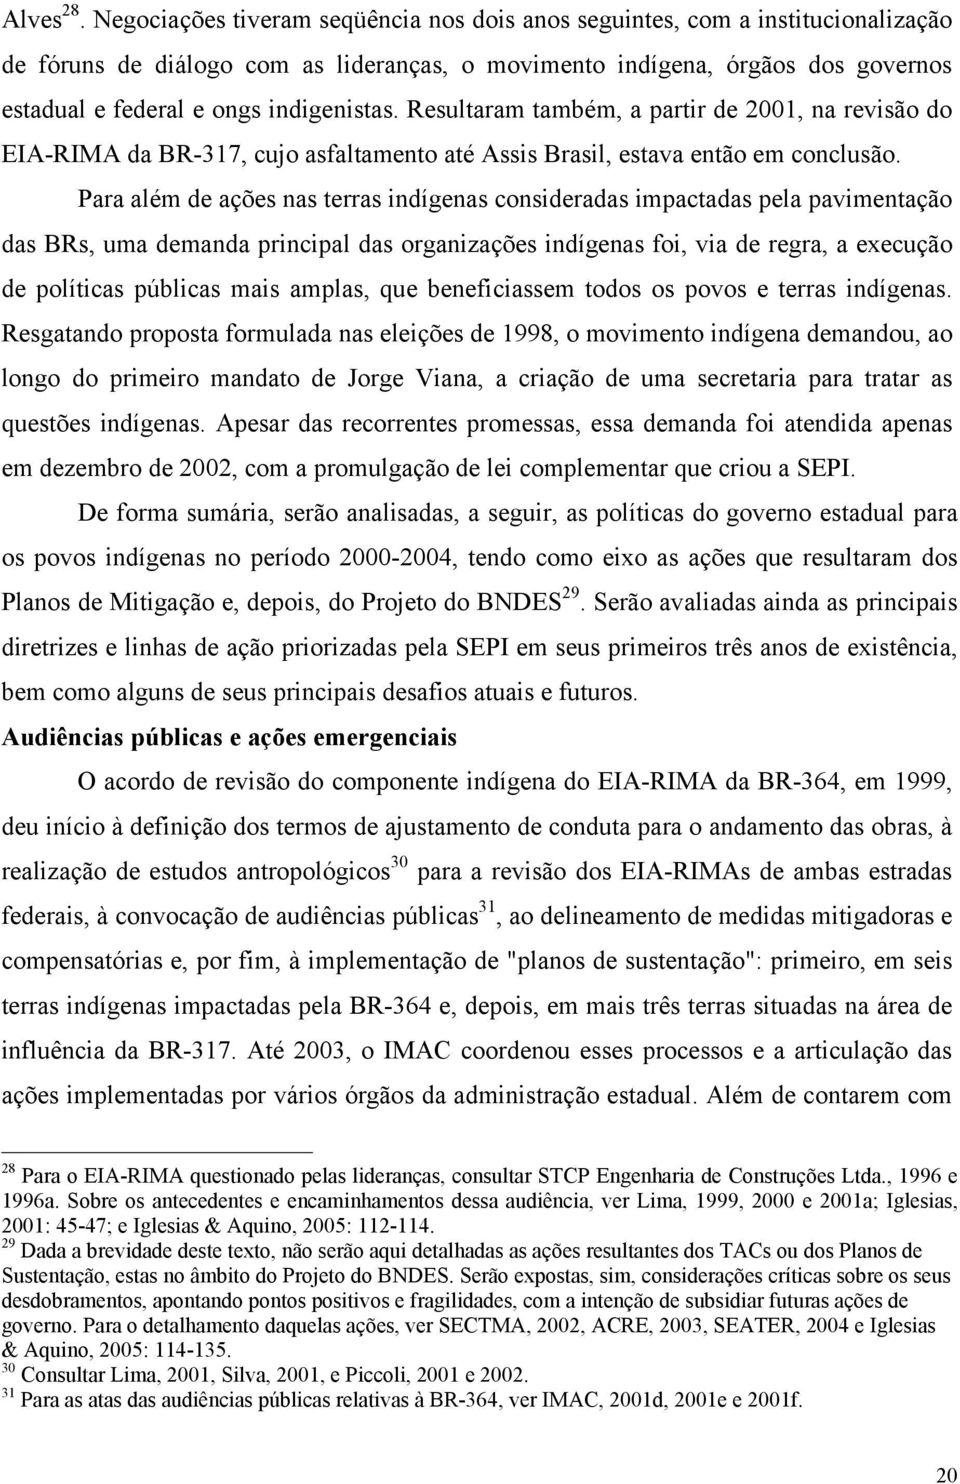 indigenistas. Resultaram também, a partir de 2001, na revisão do EIA-RIMA da BR-317, cujo asfaltamento até Assis Brasil, estava então em conclusão.